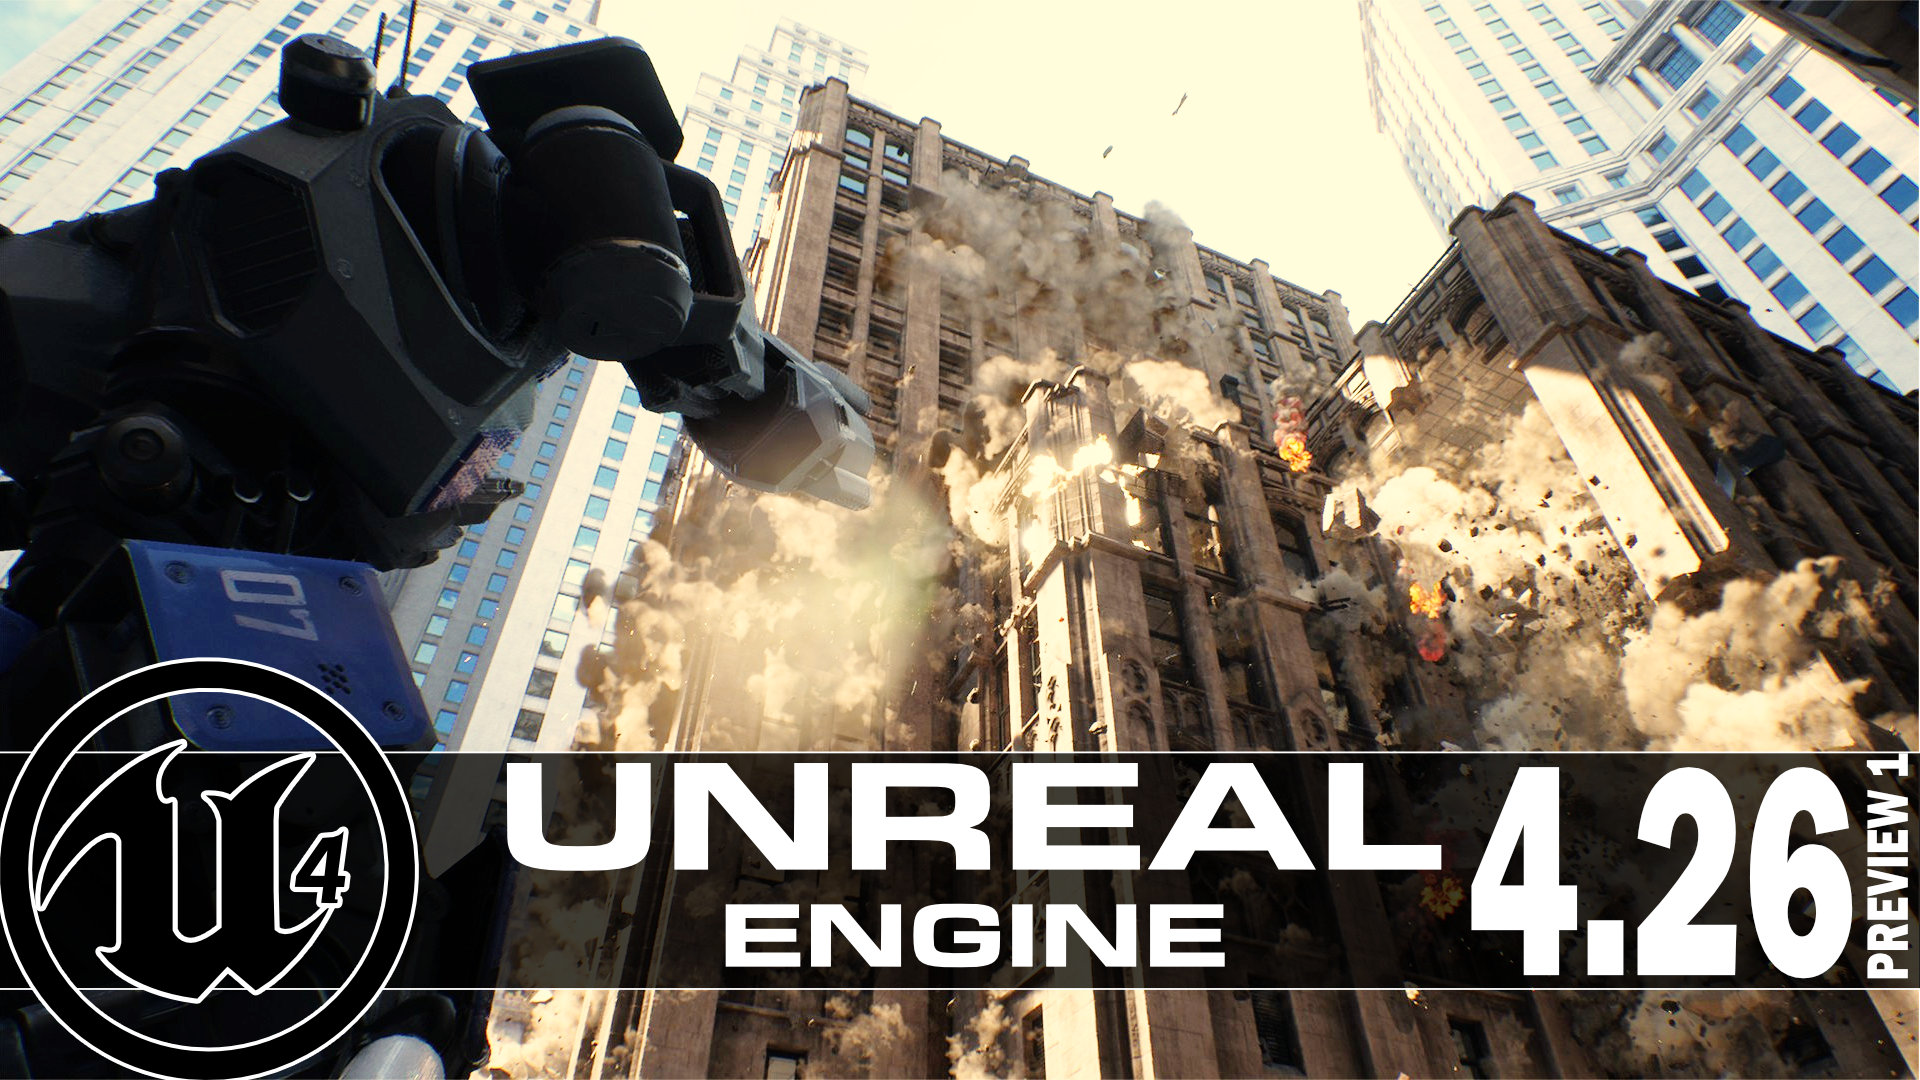 unreal engine 4.23 offline installer